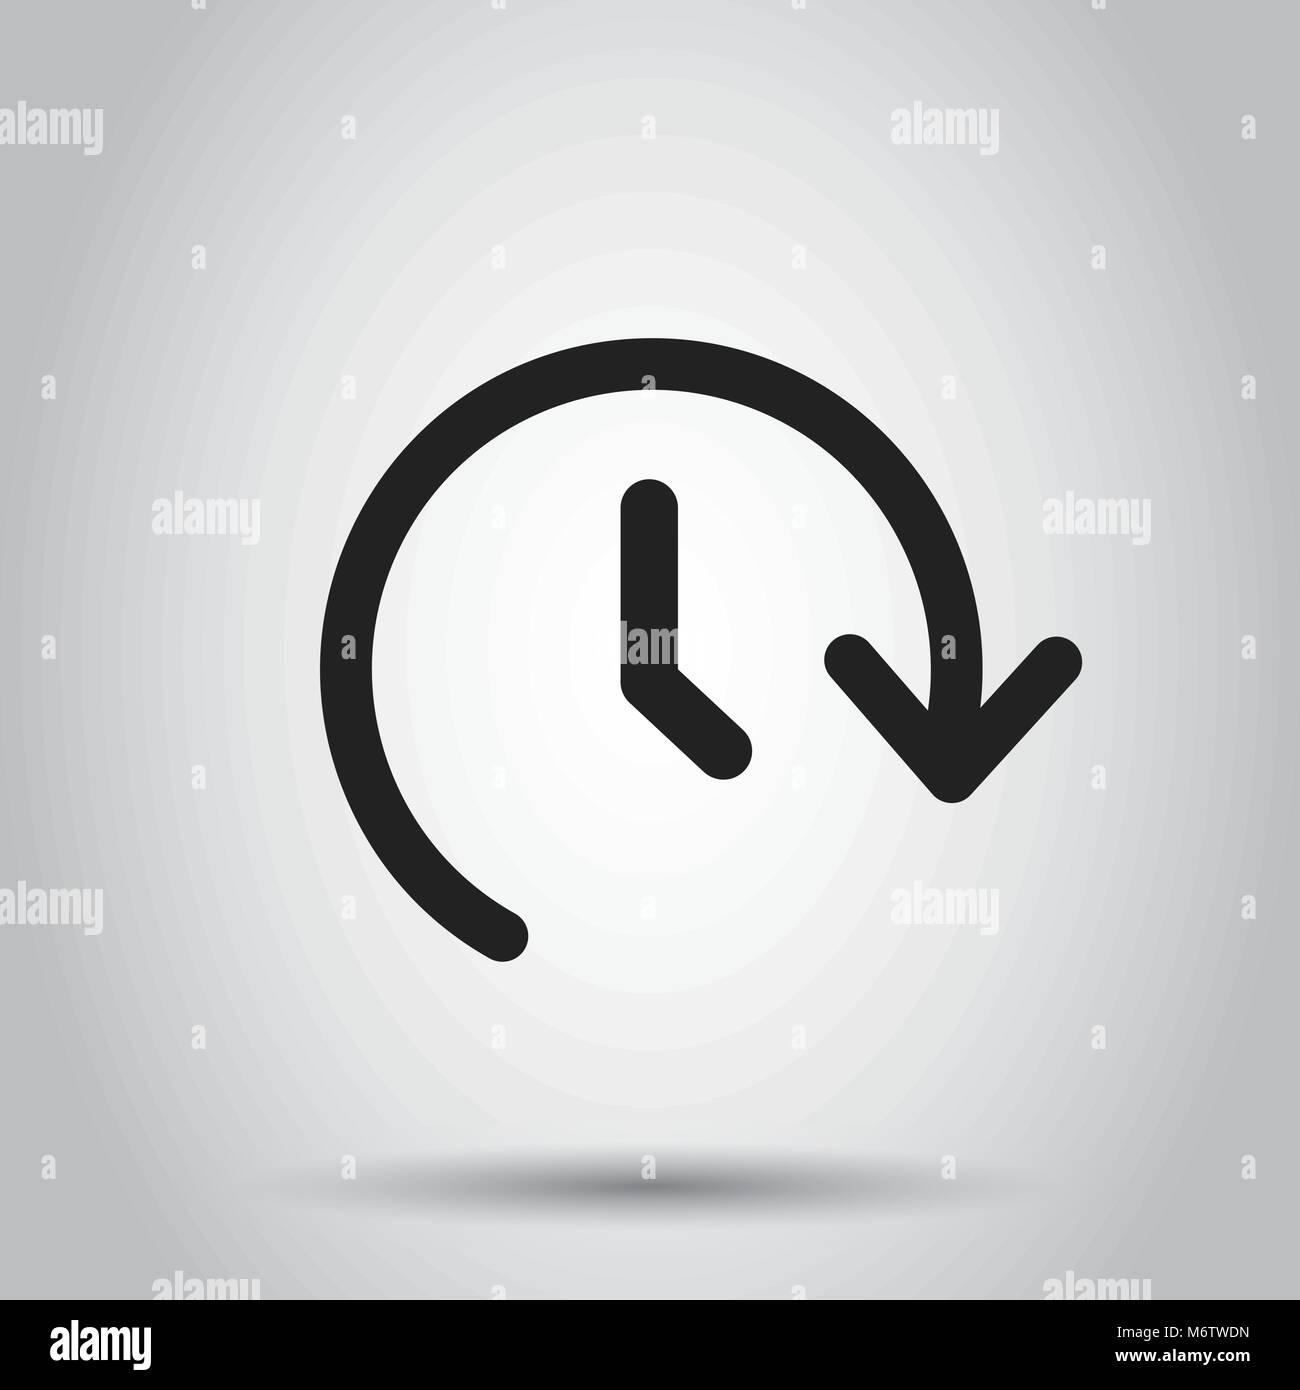 Uhrzeit Vektor icon. Timer 24 Stunden zeichen Abbildung. Business Konzept einfache flache Piktogramm auf isolierten Hintergrund. Stock Vektor